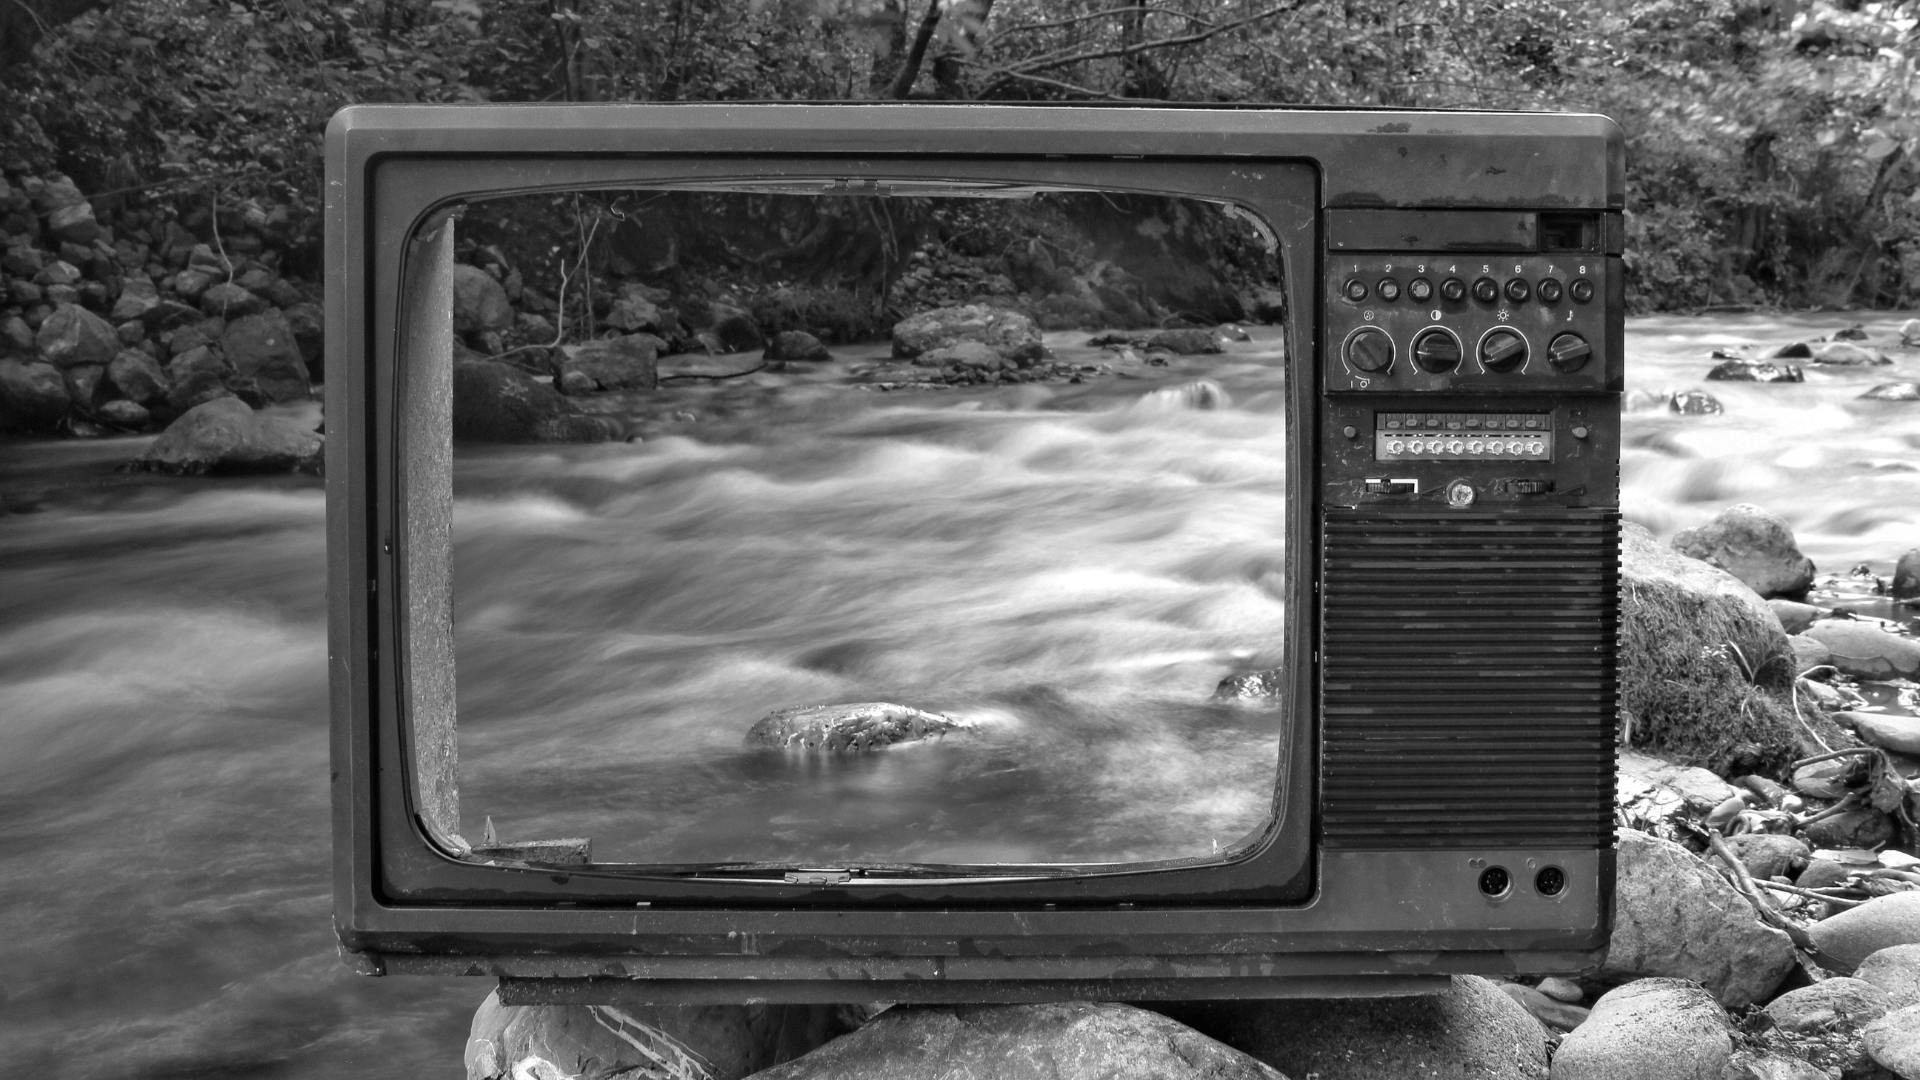 Ein TV Bildschirm in einem Fluss, in Graustufen